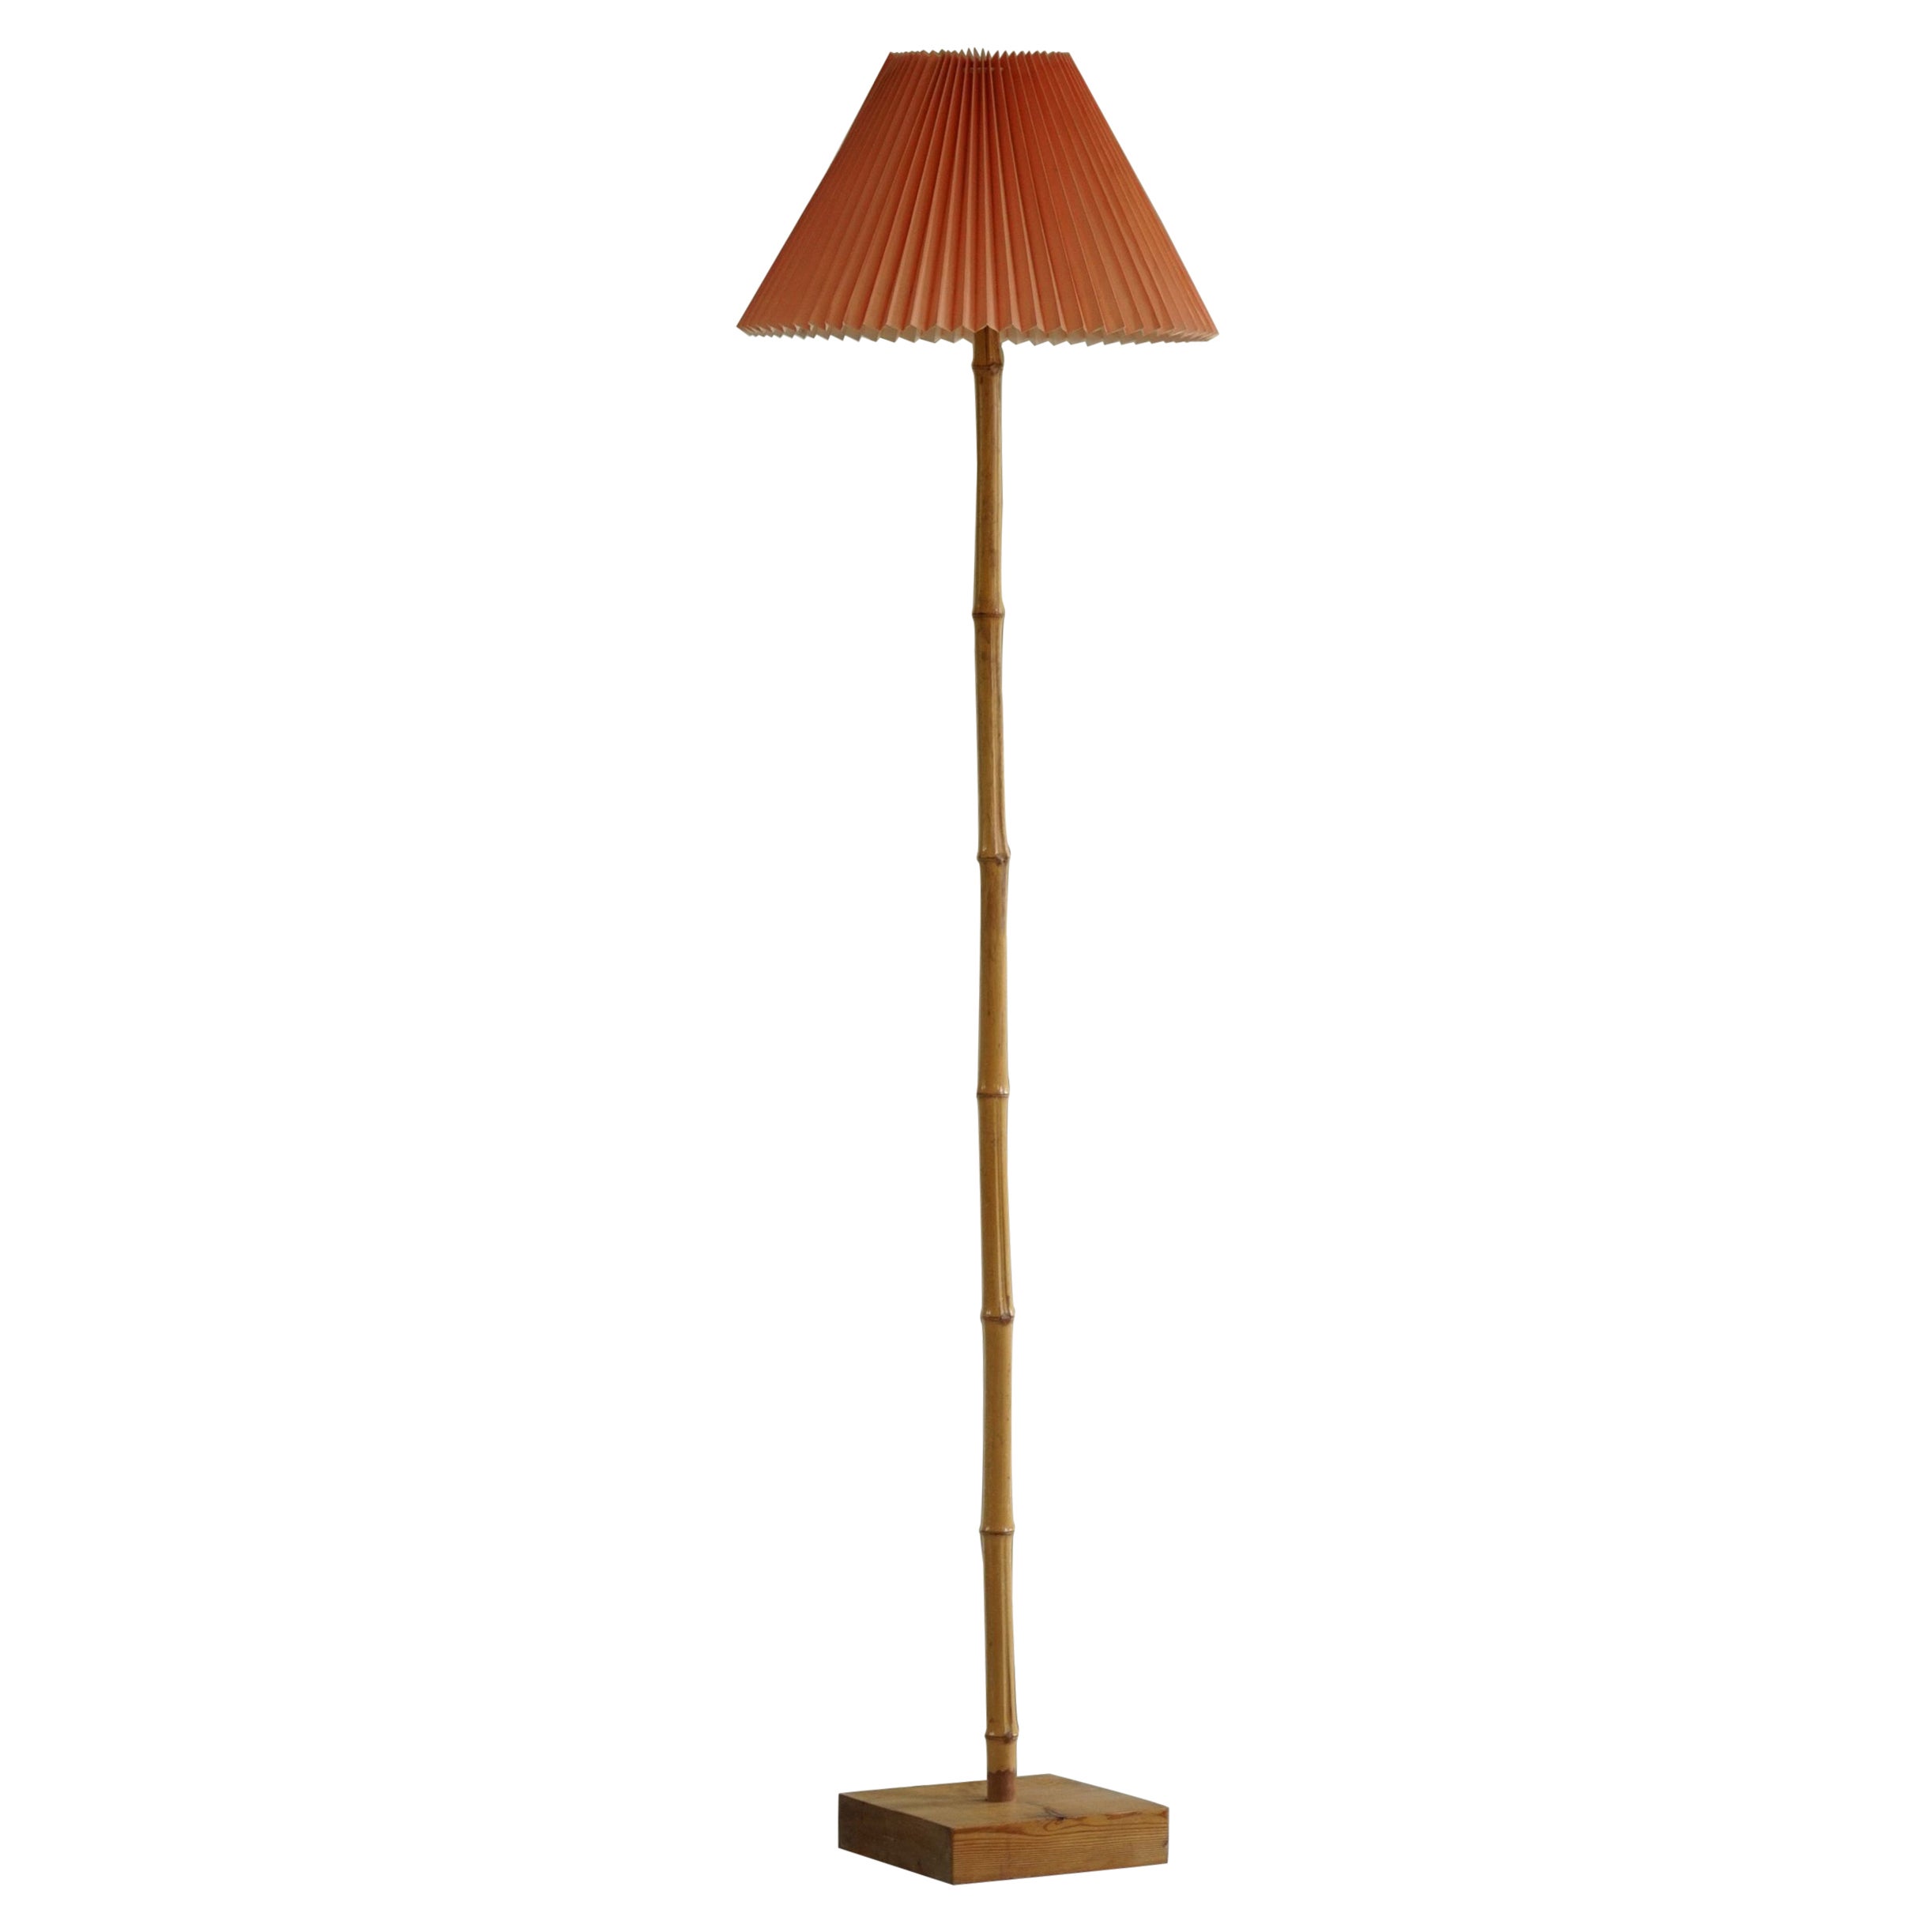 Italian Modern Bamboo Floor Lamp, Minimalist, 1970s